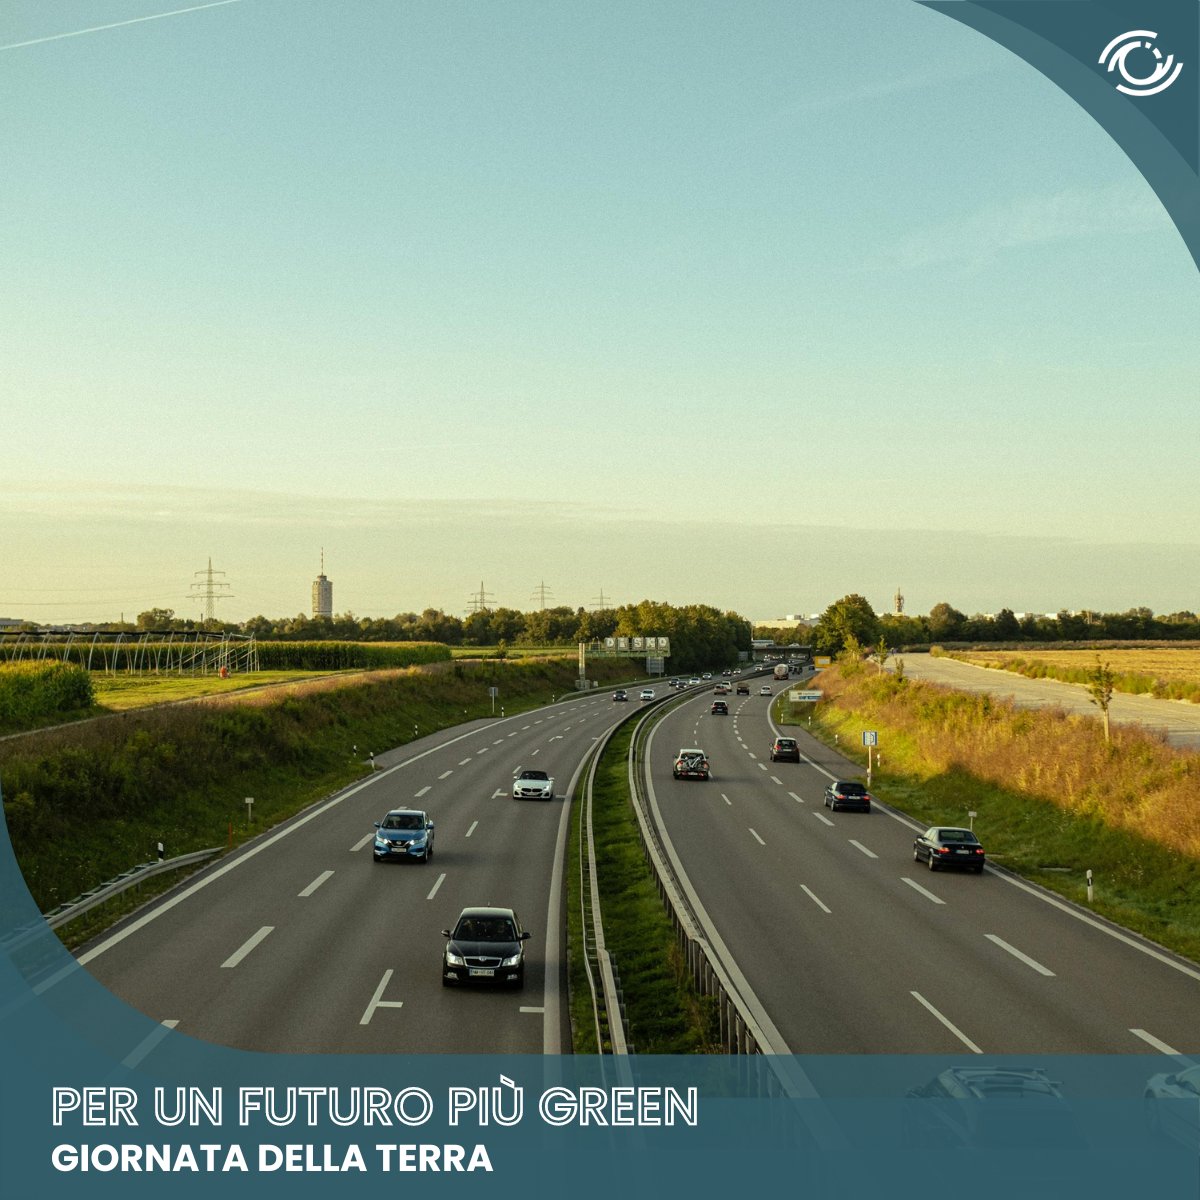 #Giornatadellaterra
 Oggi ribadiamo il nostro impegno per la salvaguardia dell'ambiente.

I nostri servizi per la #mobilitàurbana ottimizzano la viabilità, riducono i tempi di percorrenza e combattono l'inquinamento.
Continuiamo a lavorare per un futuro più green!